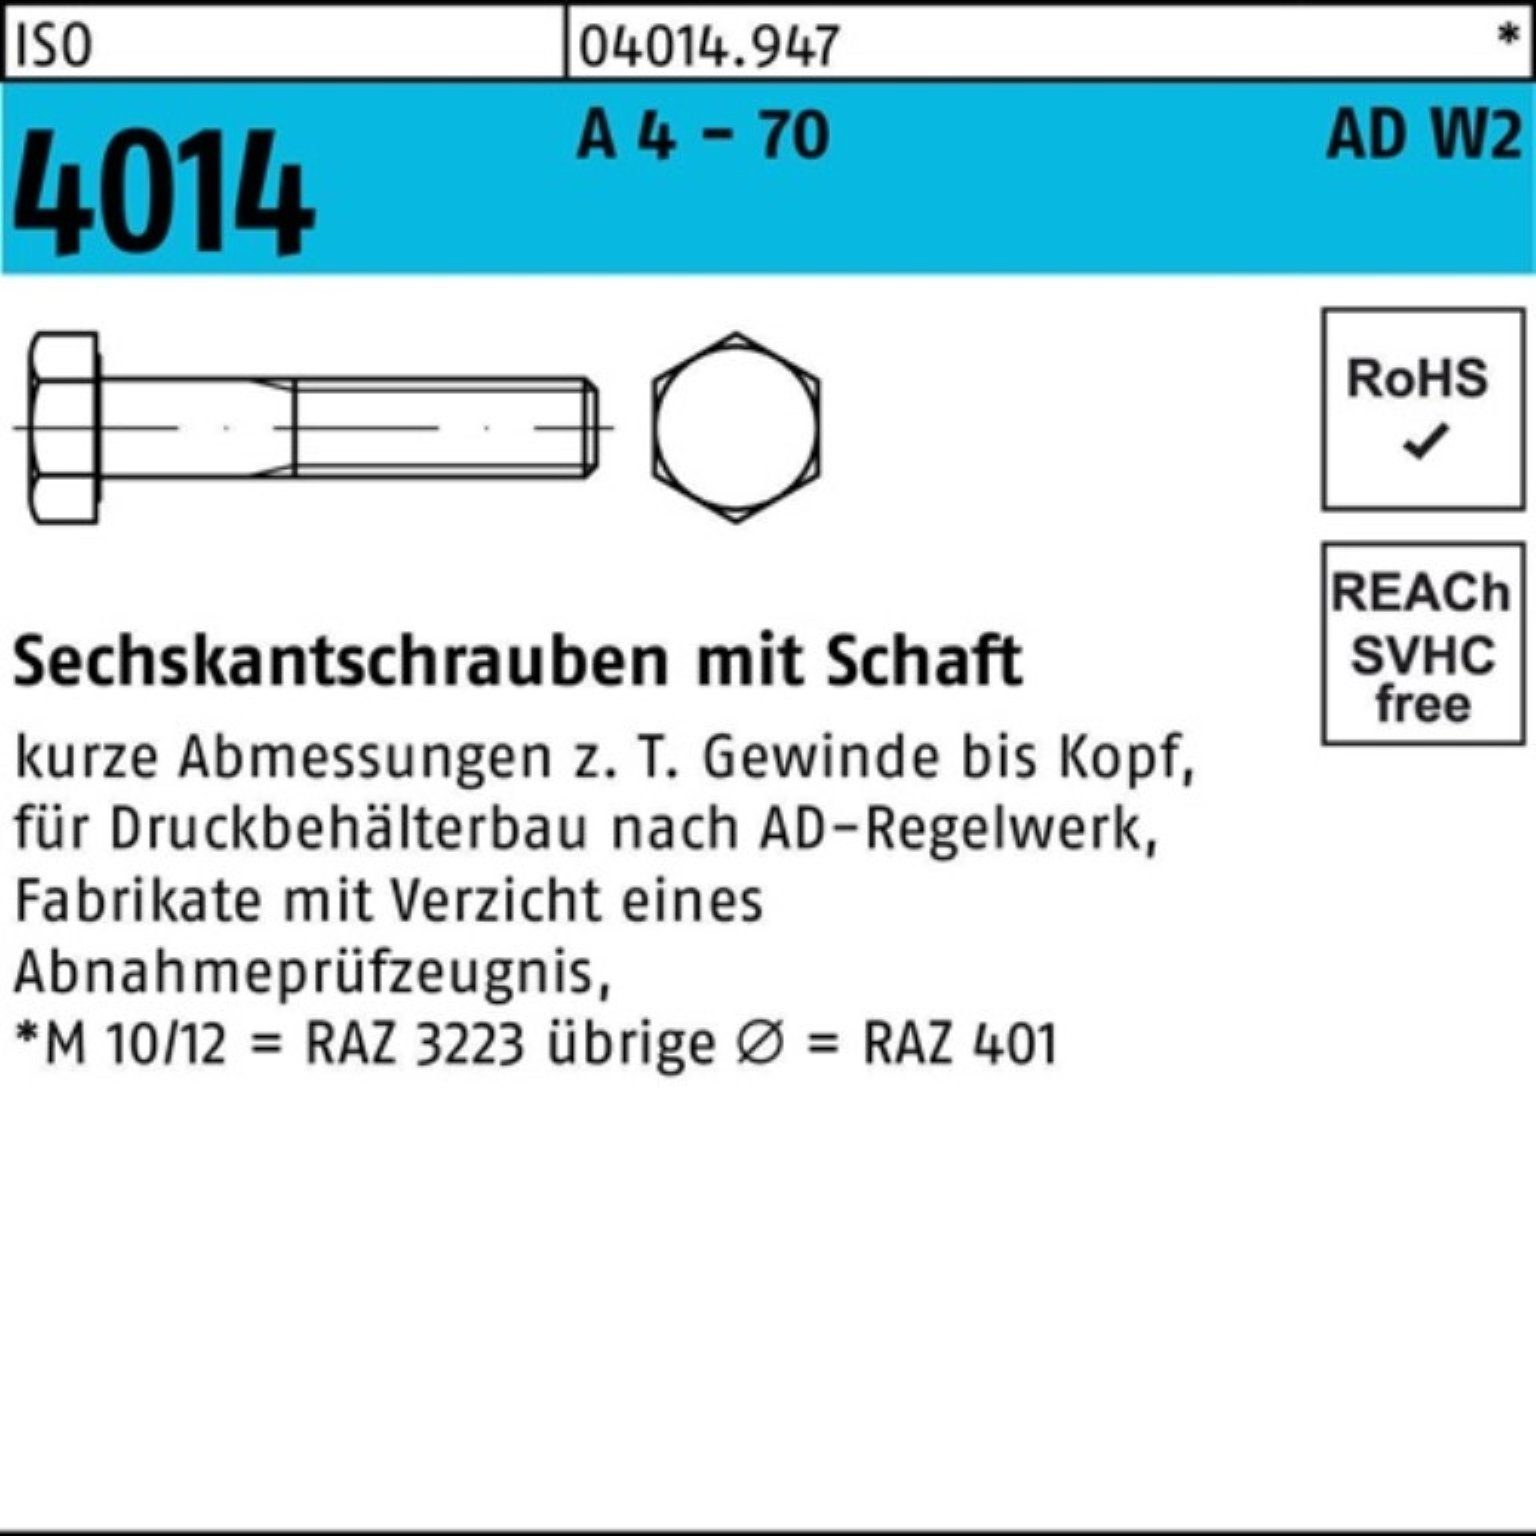 Bufab Sechskantschraube 100er Pack Sechskantschraube ISO 4014 Schaft M16x 180 A 4 - 70 AD-W2 1